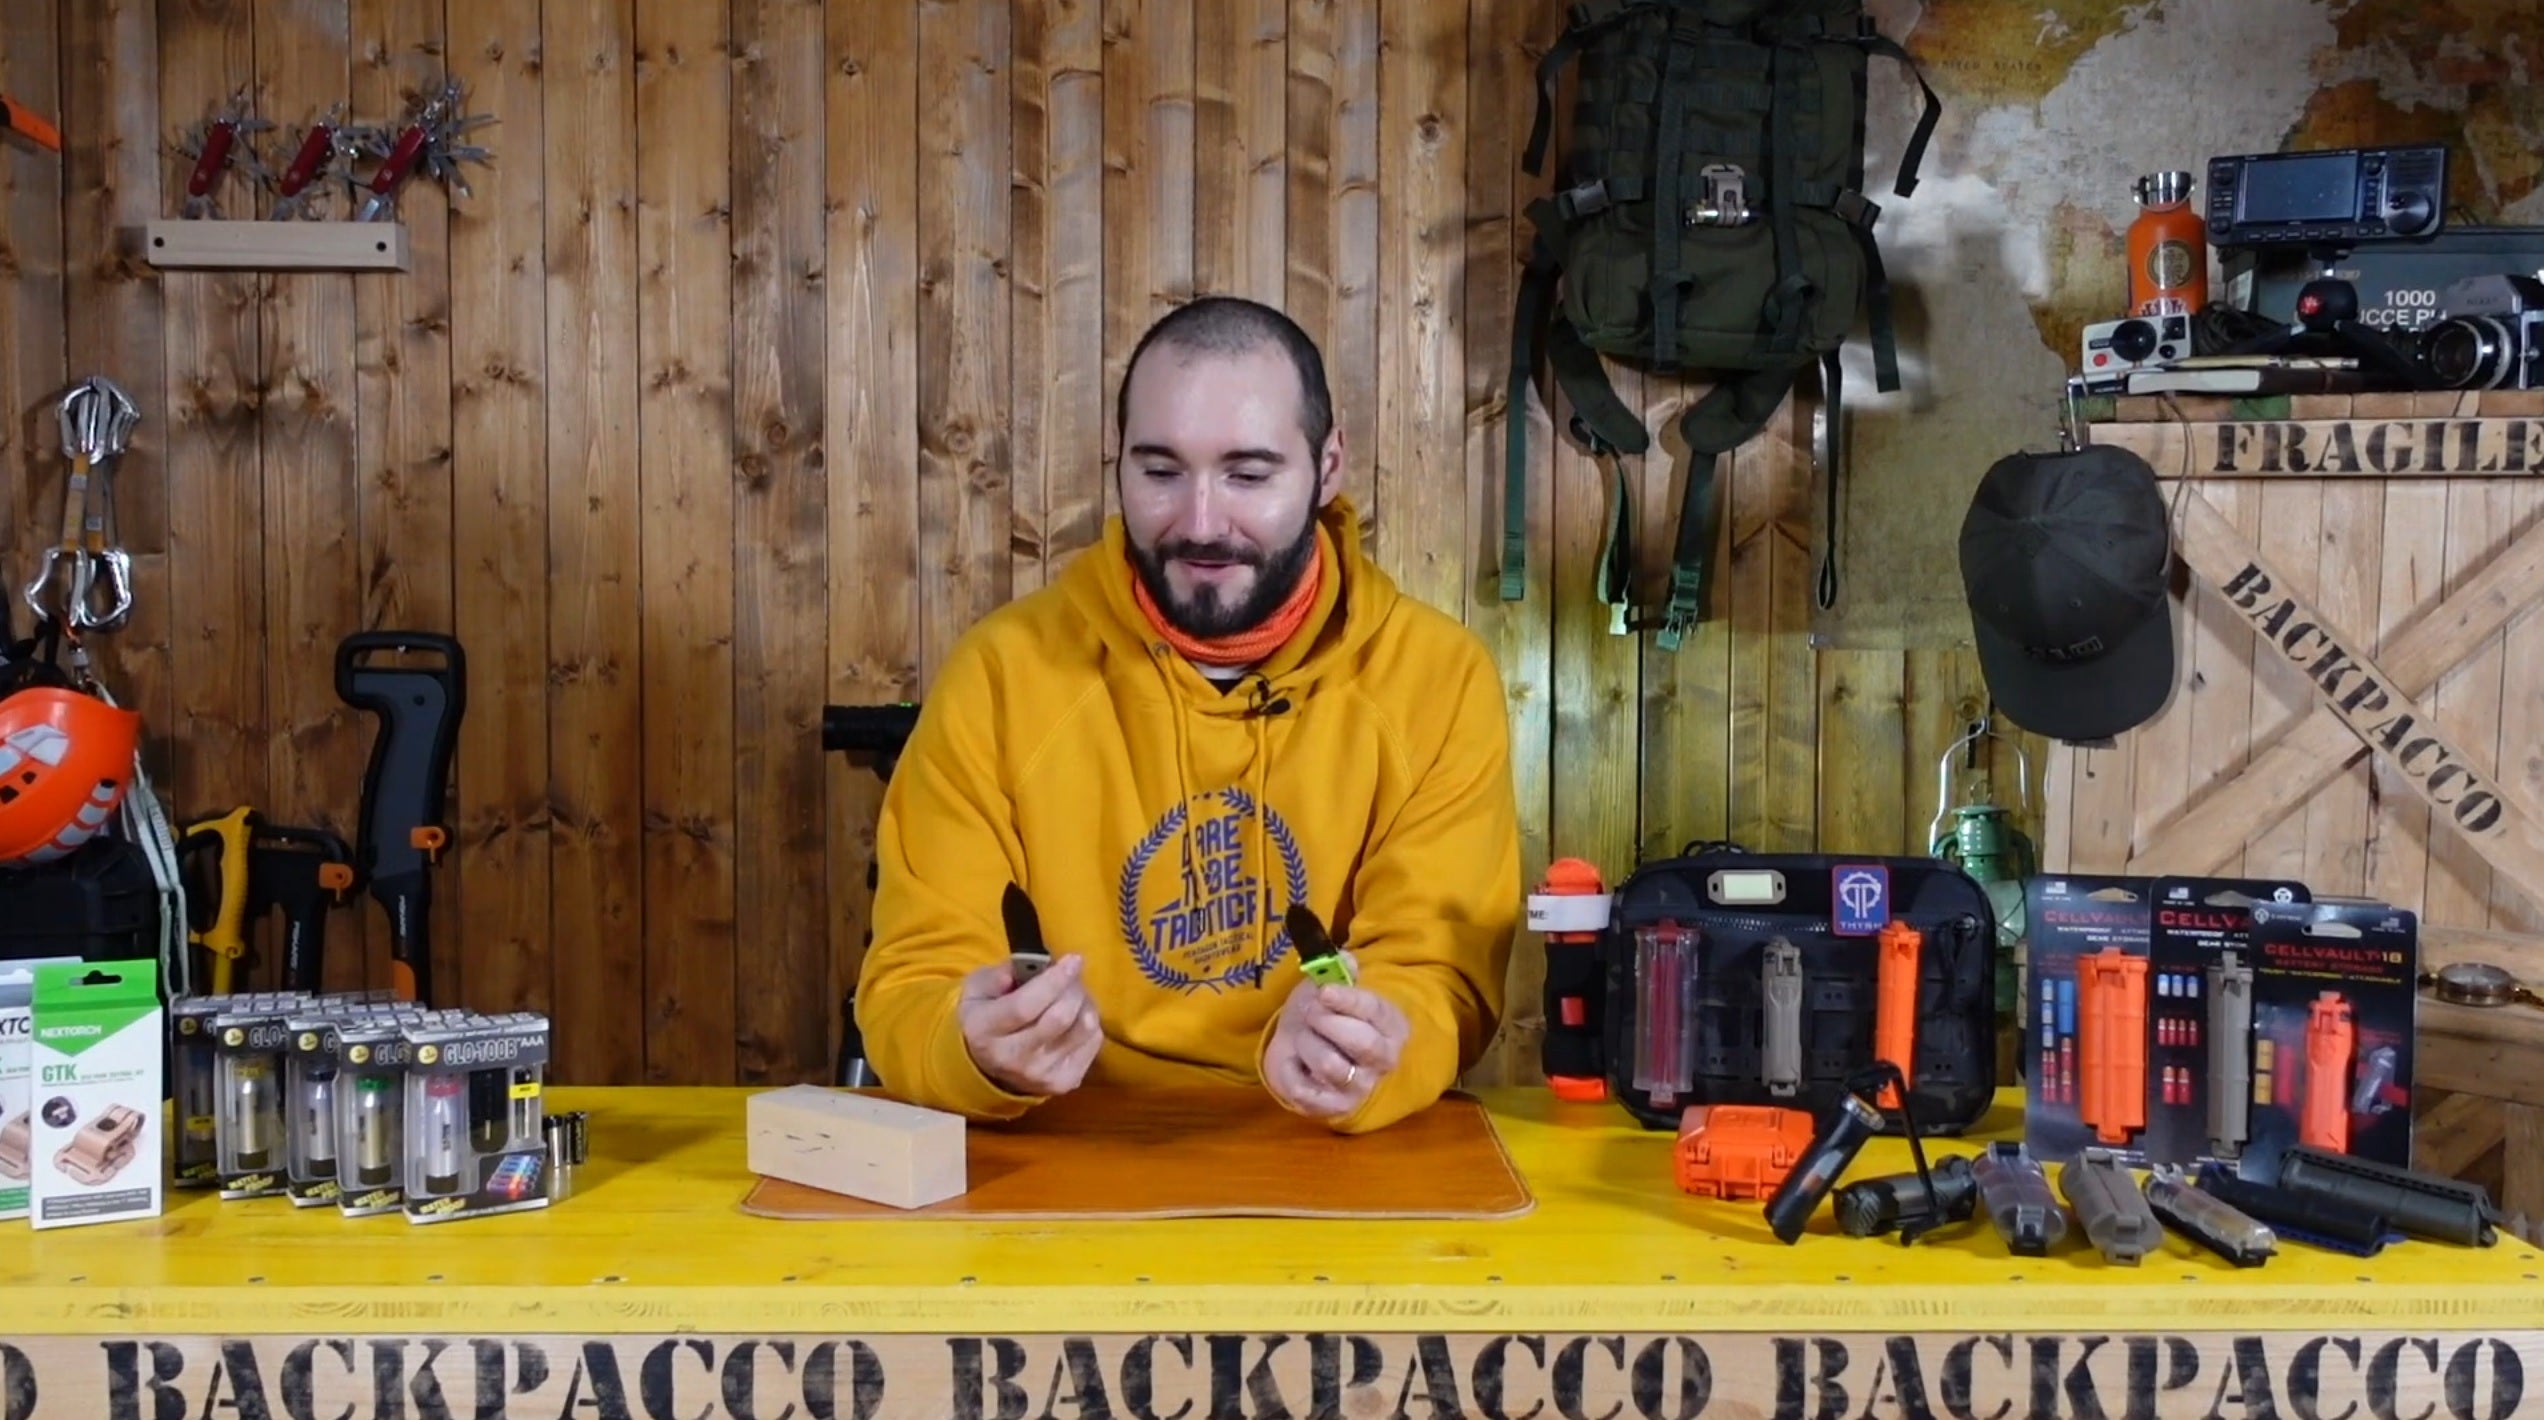 COPERTINA DEL VIDEO DOVE PAOLO DI BACKPACCO SPIEGA IL KA-BAR Dozier folding hunter